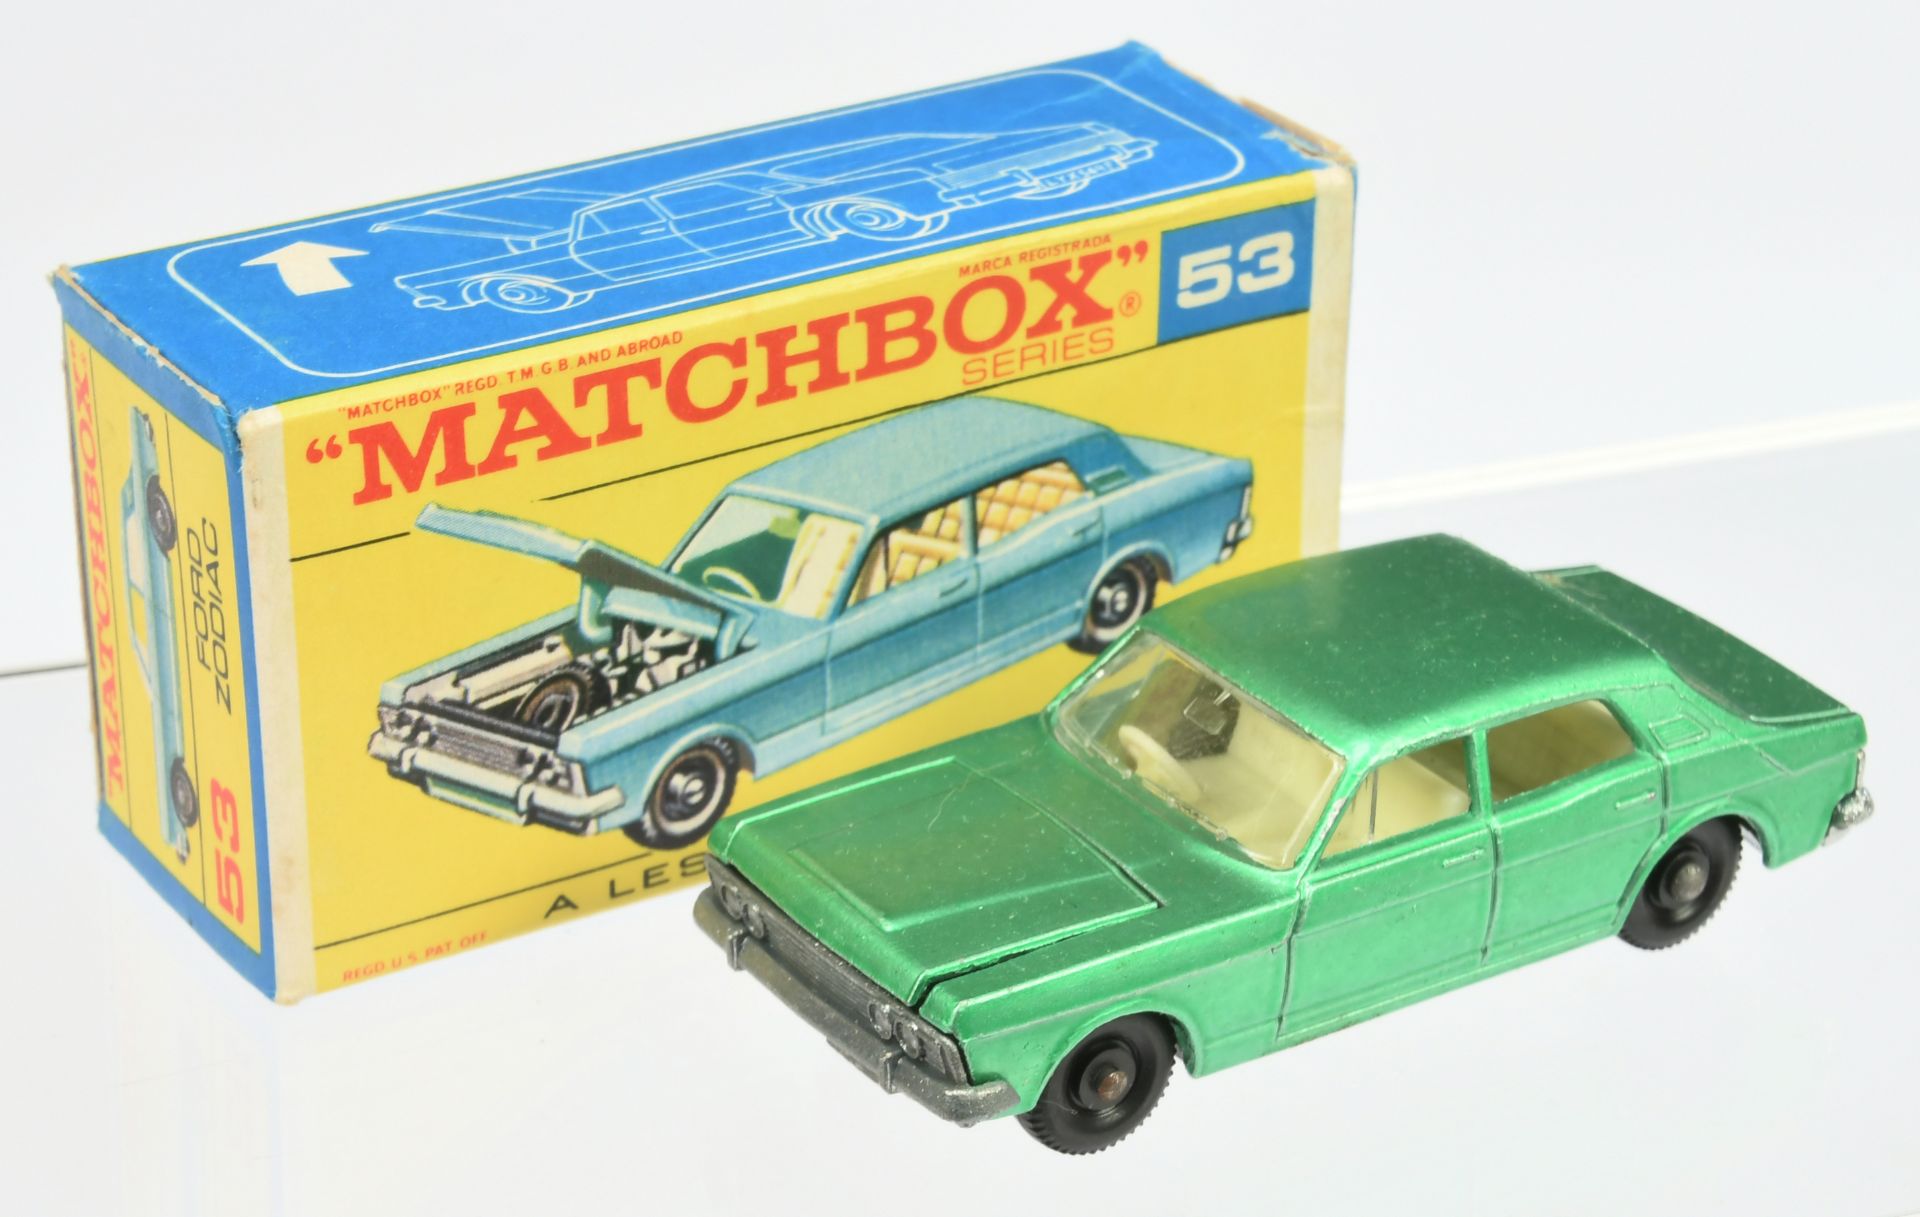 Matchbox Regular Wheels group (1) 8e Ford Mustang - white - box has tape removal mark (2) 53c For... - Bild 2 aus 4